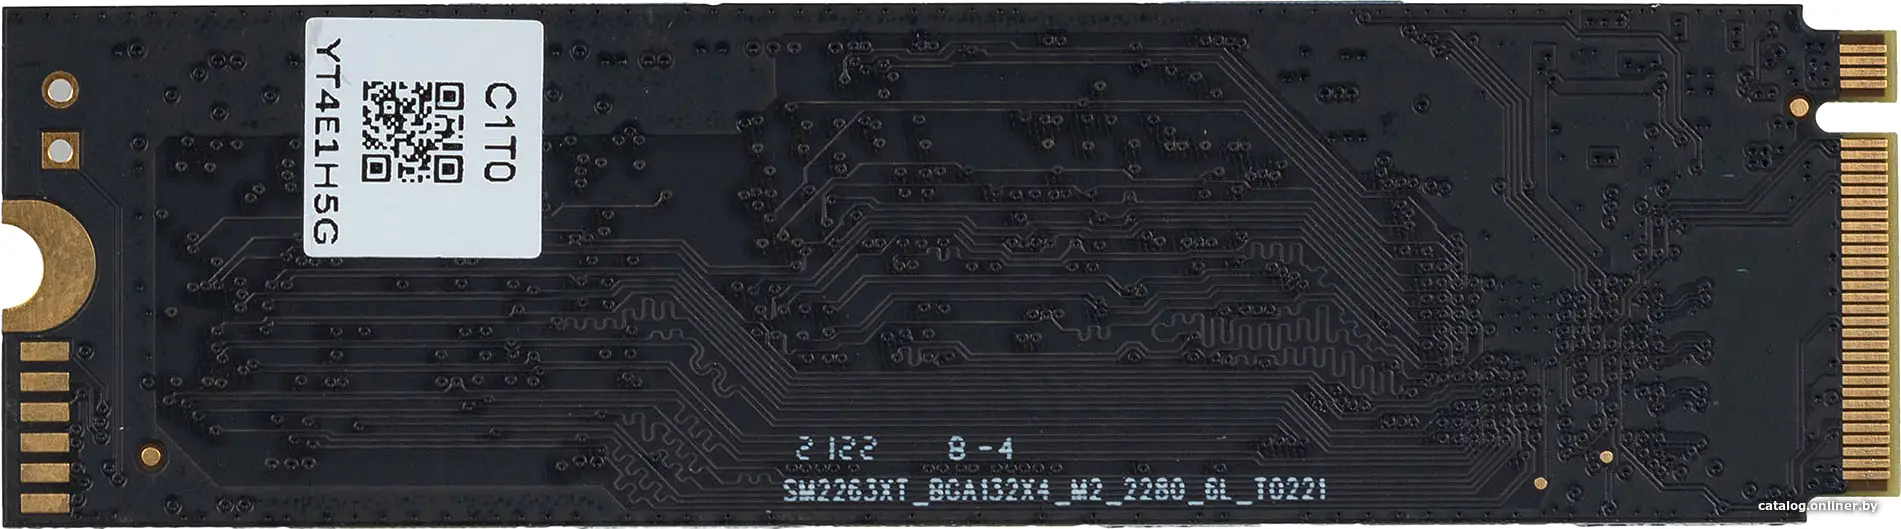 Купить Накопитель SSD Digma SATA III 1Tb DGSR1001TS93T Run S9 M.2 2280, цена, опт и розница